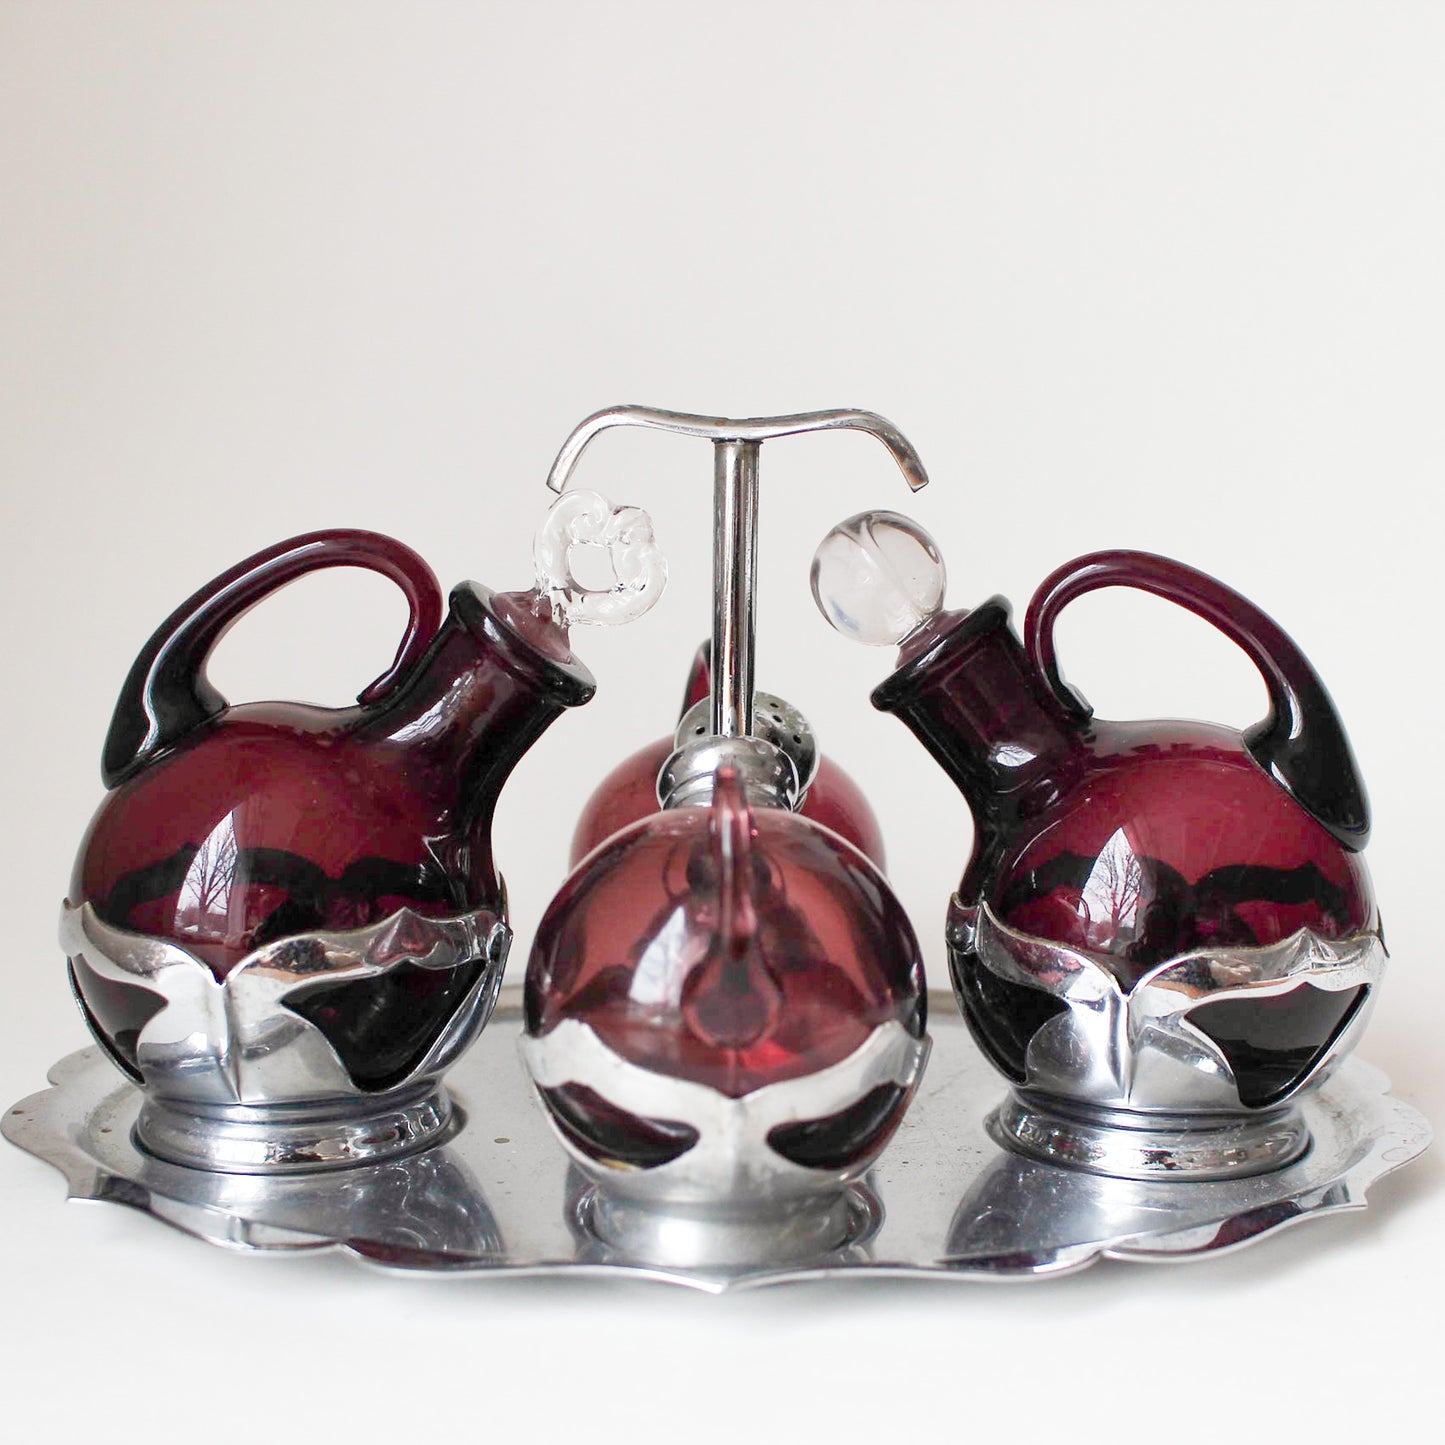 Farber Bros/Cambridge Glass Krome Kraft Salt & Pepper Shaker and Oil & Vinegar Set